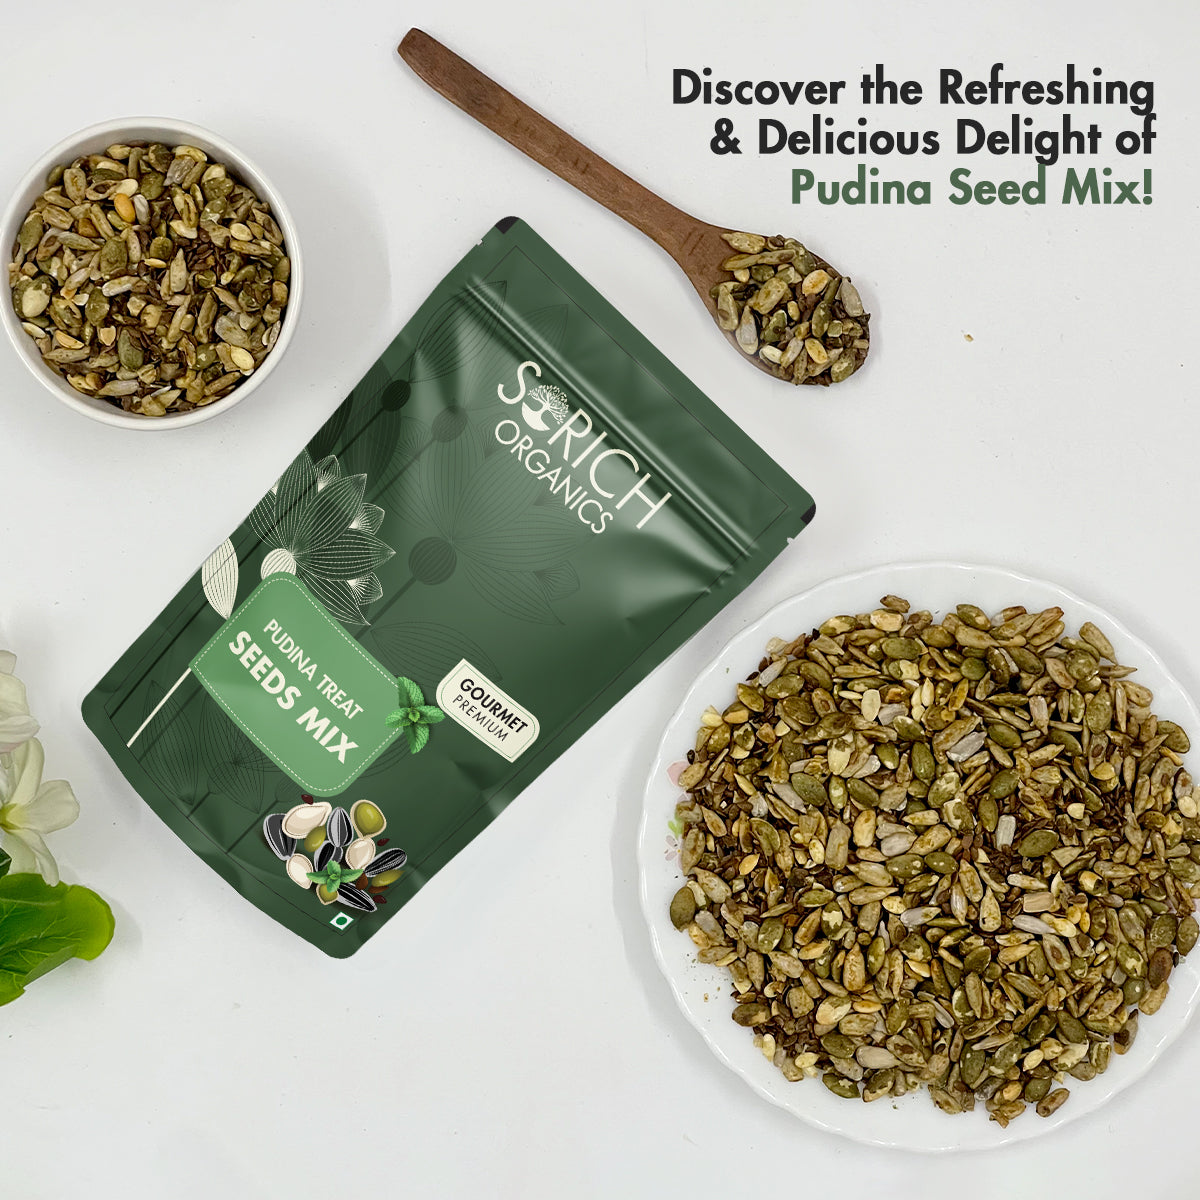 Pudina Treat Seeds Mix